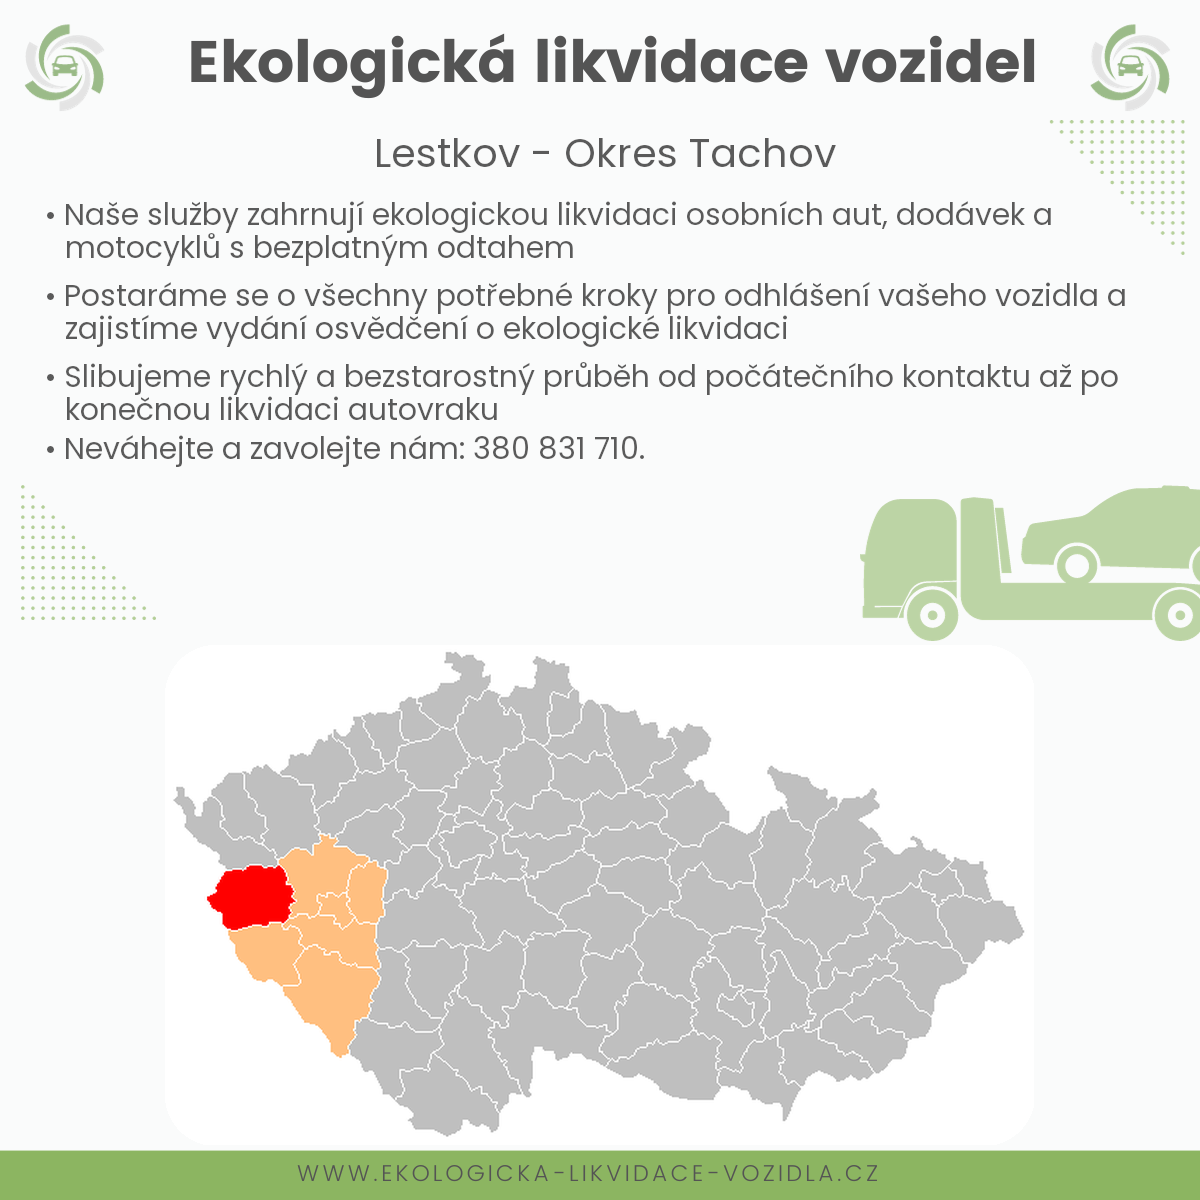 likvidace vozidel - Lestkov